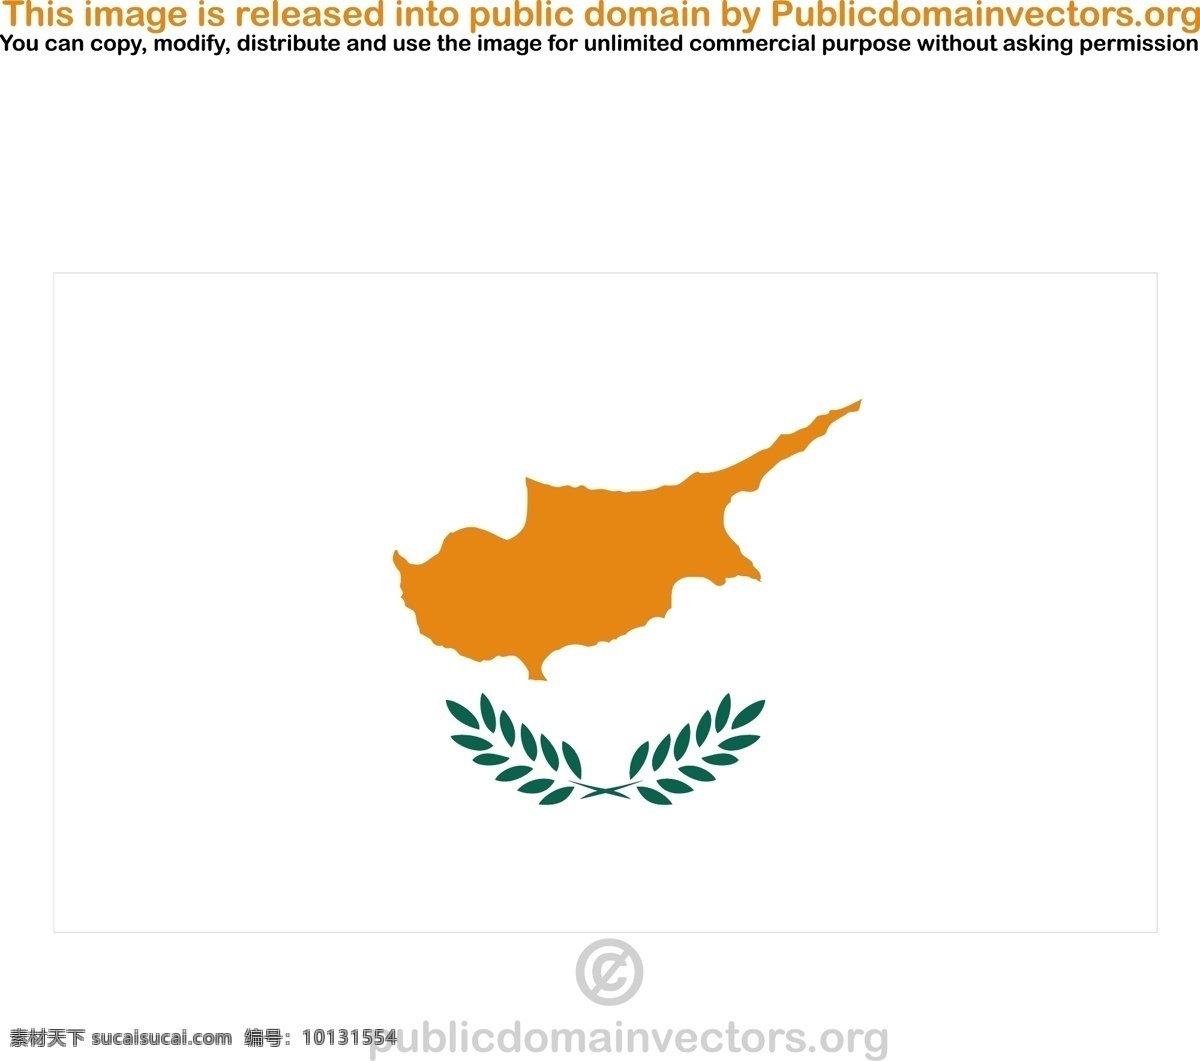 塞浦路斯 矢量 标志 岛 旗 旗帜 土地 塞浦路斯共和国 欧盟 欧洲联盟国家 svg 矢量图 文化艺术